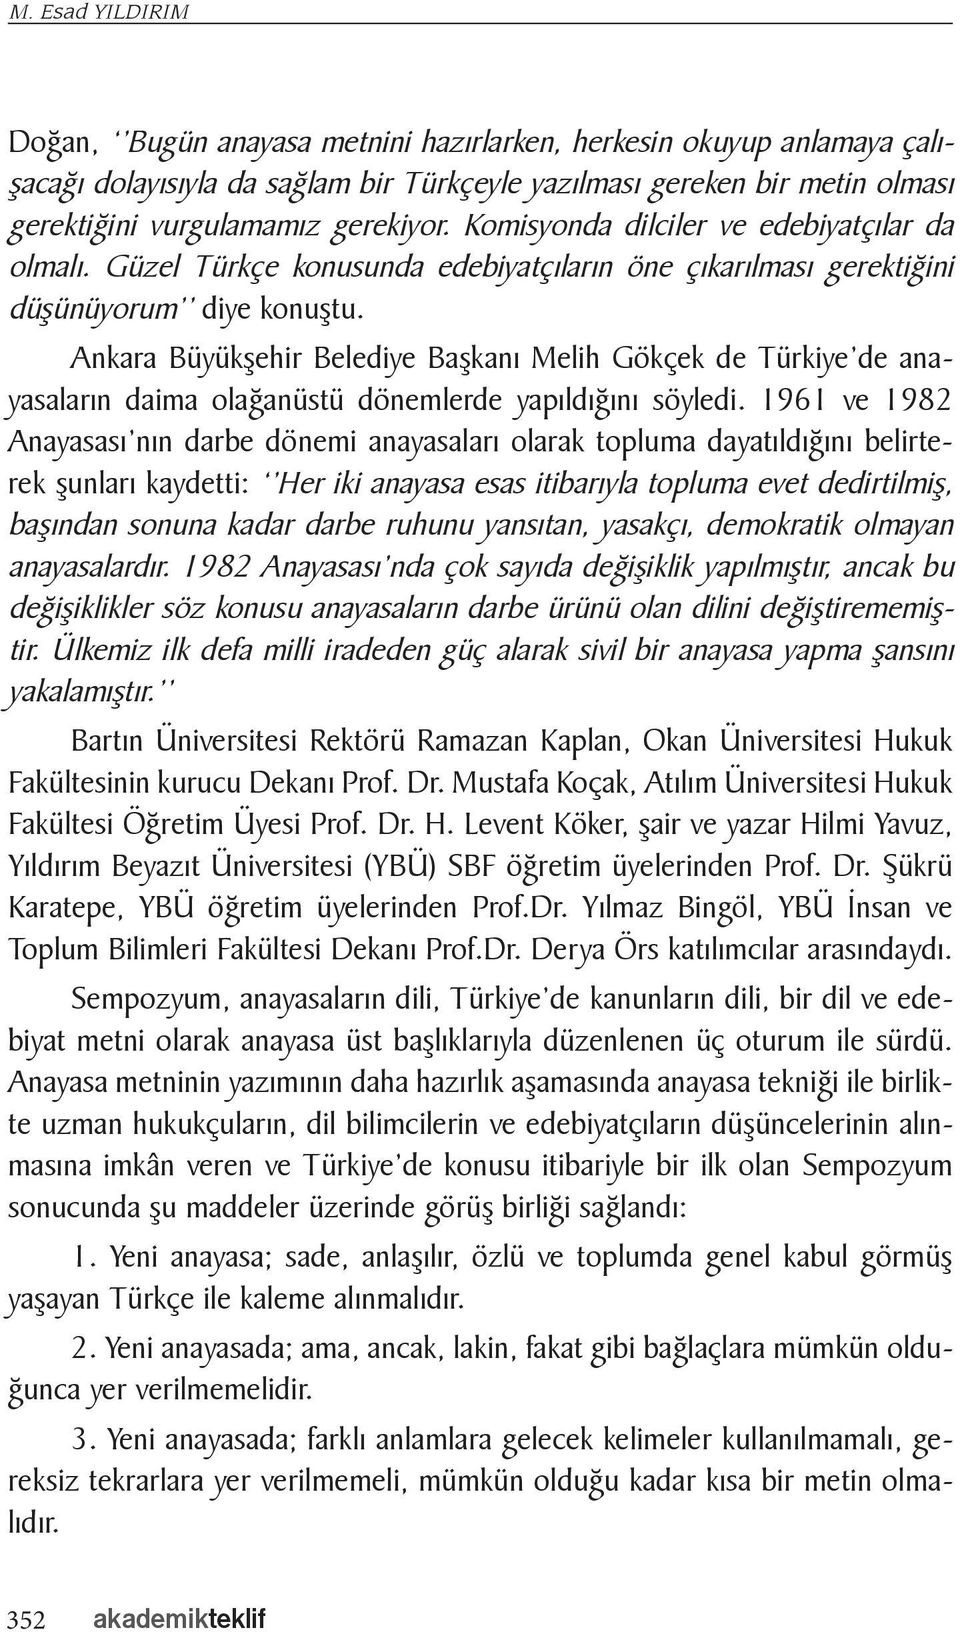 Ankara Büyükşehir Belediye Başkanı Melih Gökçek de Türkiye de anayasaların daima olağanüstü dönemlerde yapıldığını söyledi.